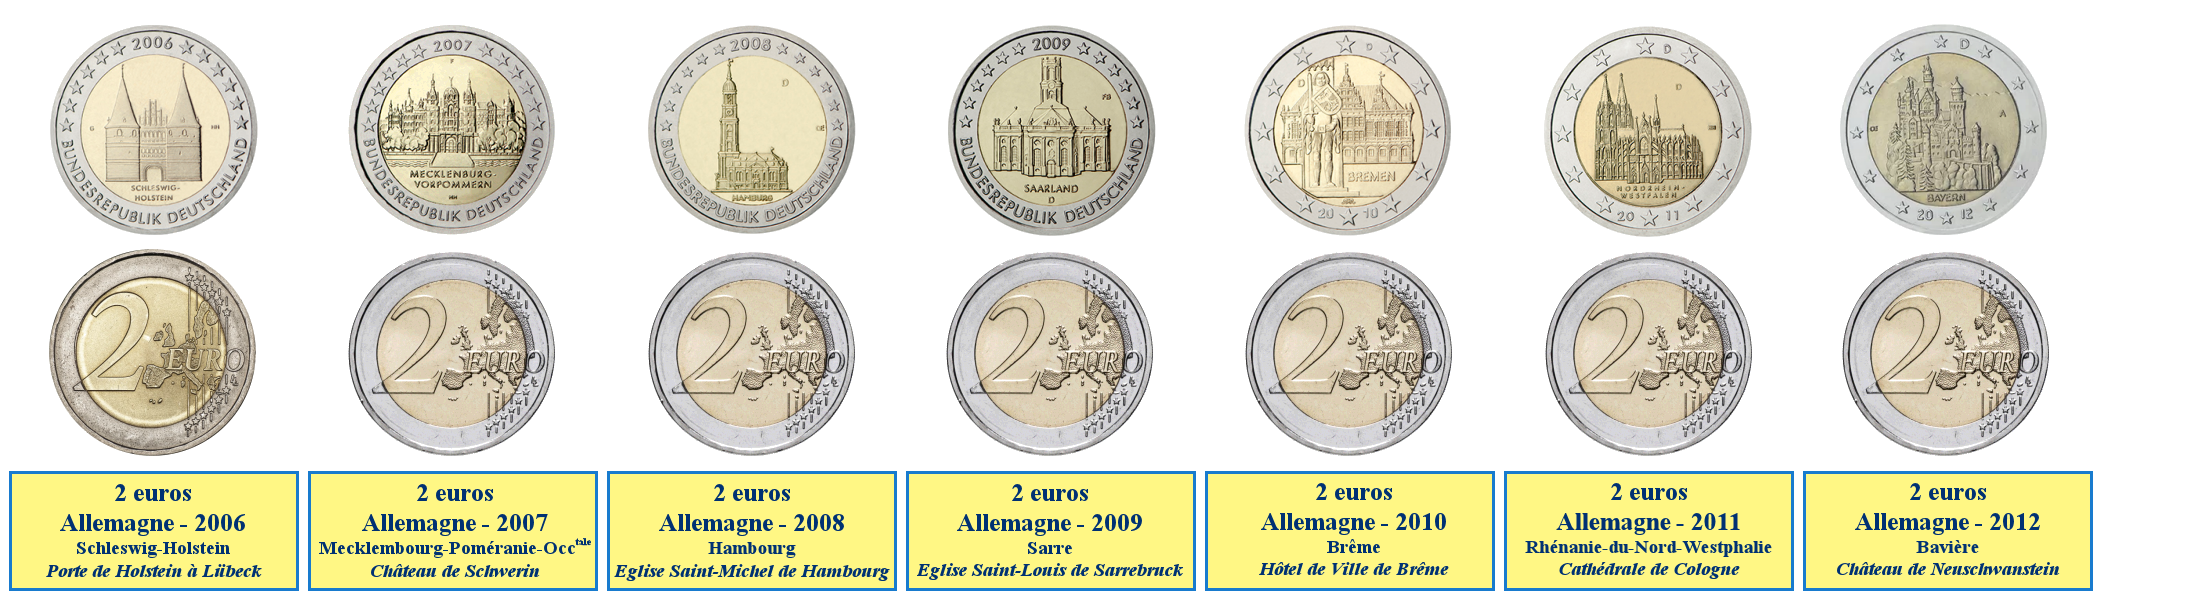 Photos de pièces de monnaies de 2 euros commémoratives des Länder allemands 2006-2012